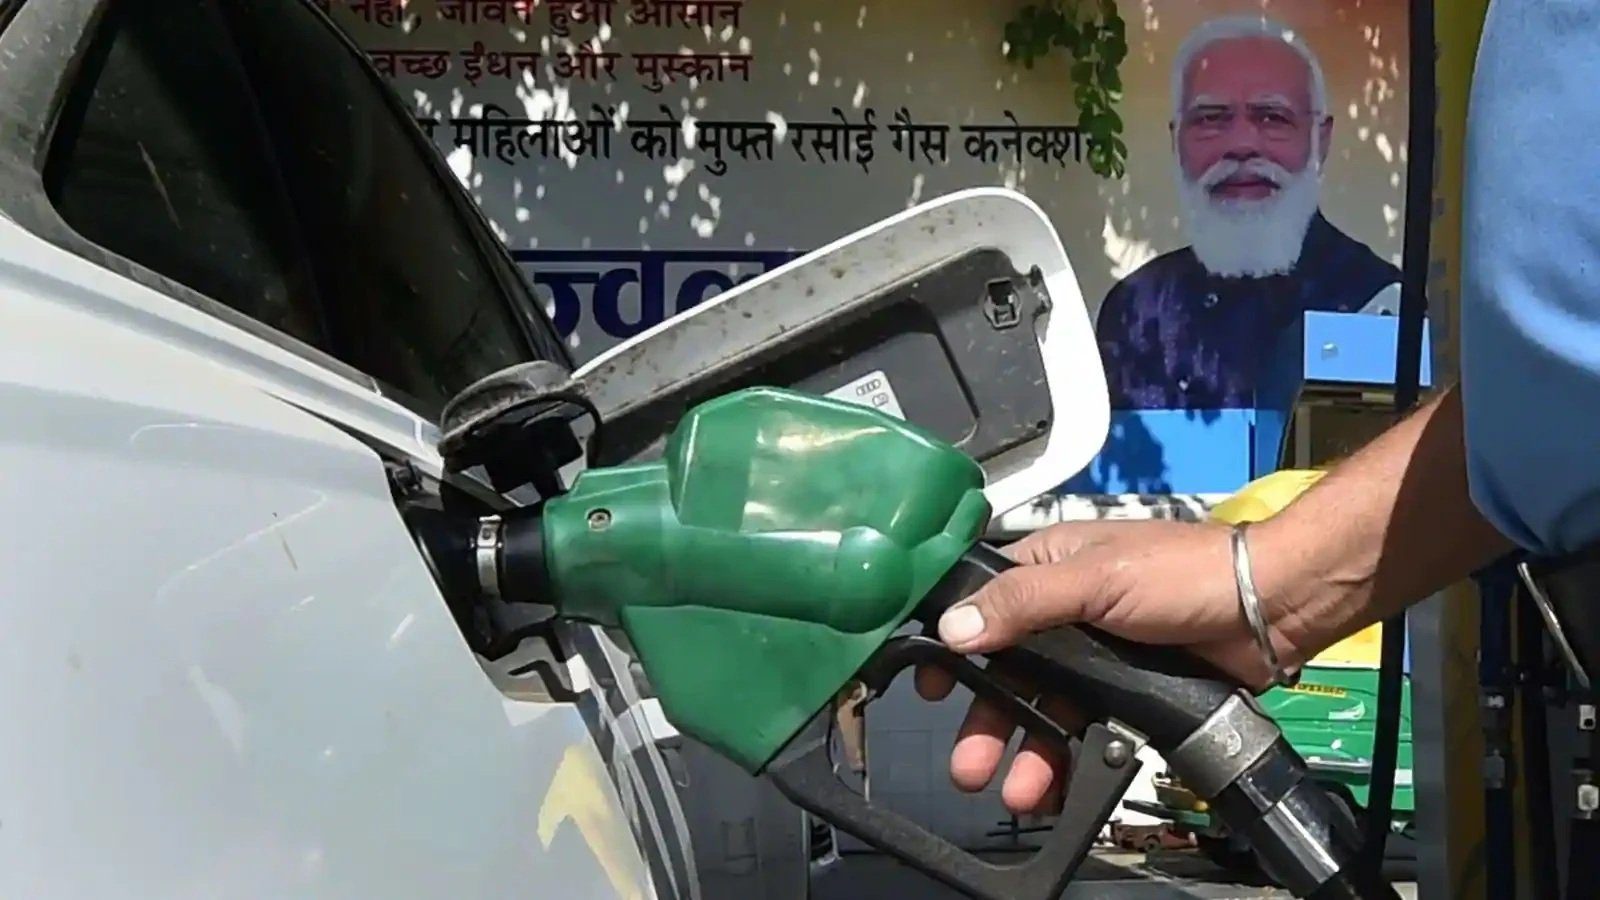 الهند تجمّد أسعار الوقود لكبح التضخم استعدادًا للانتخابات